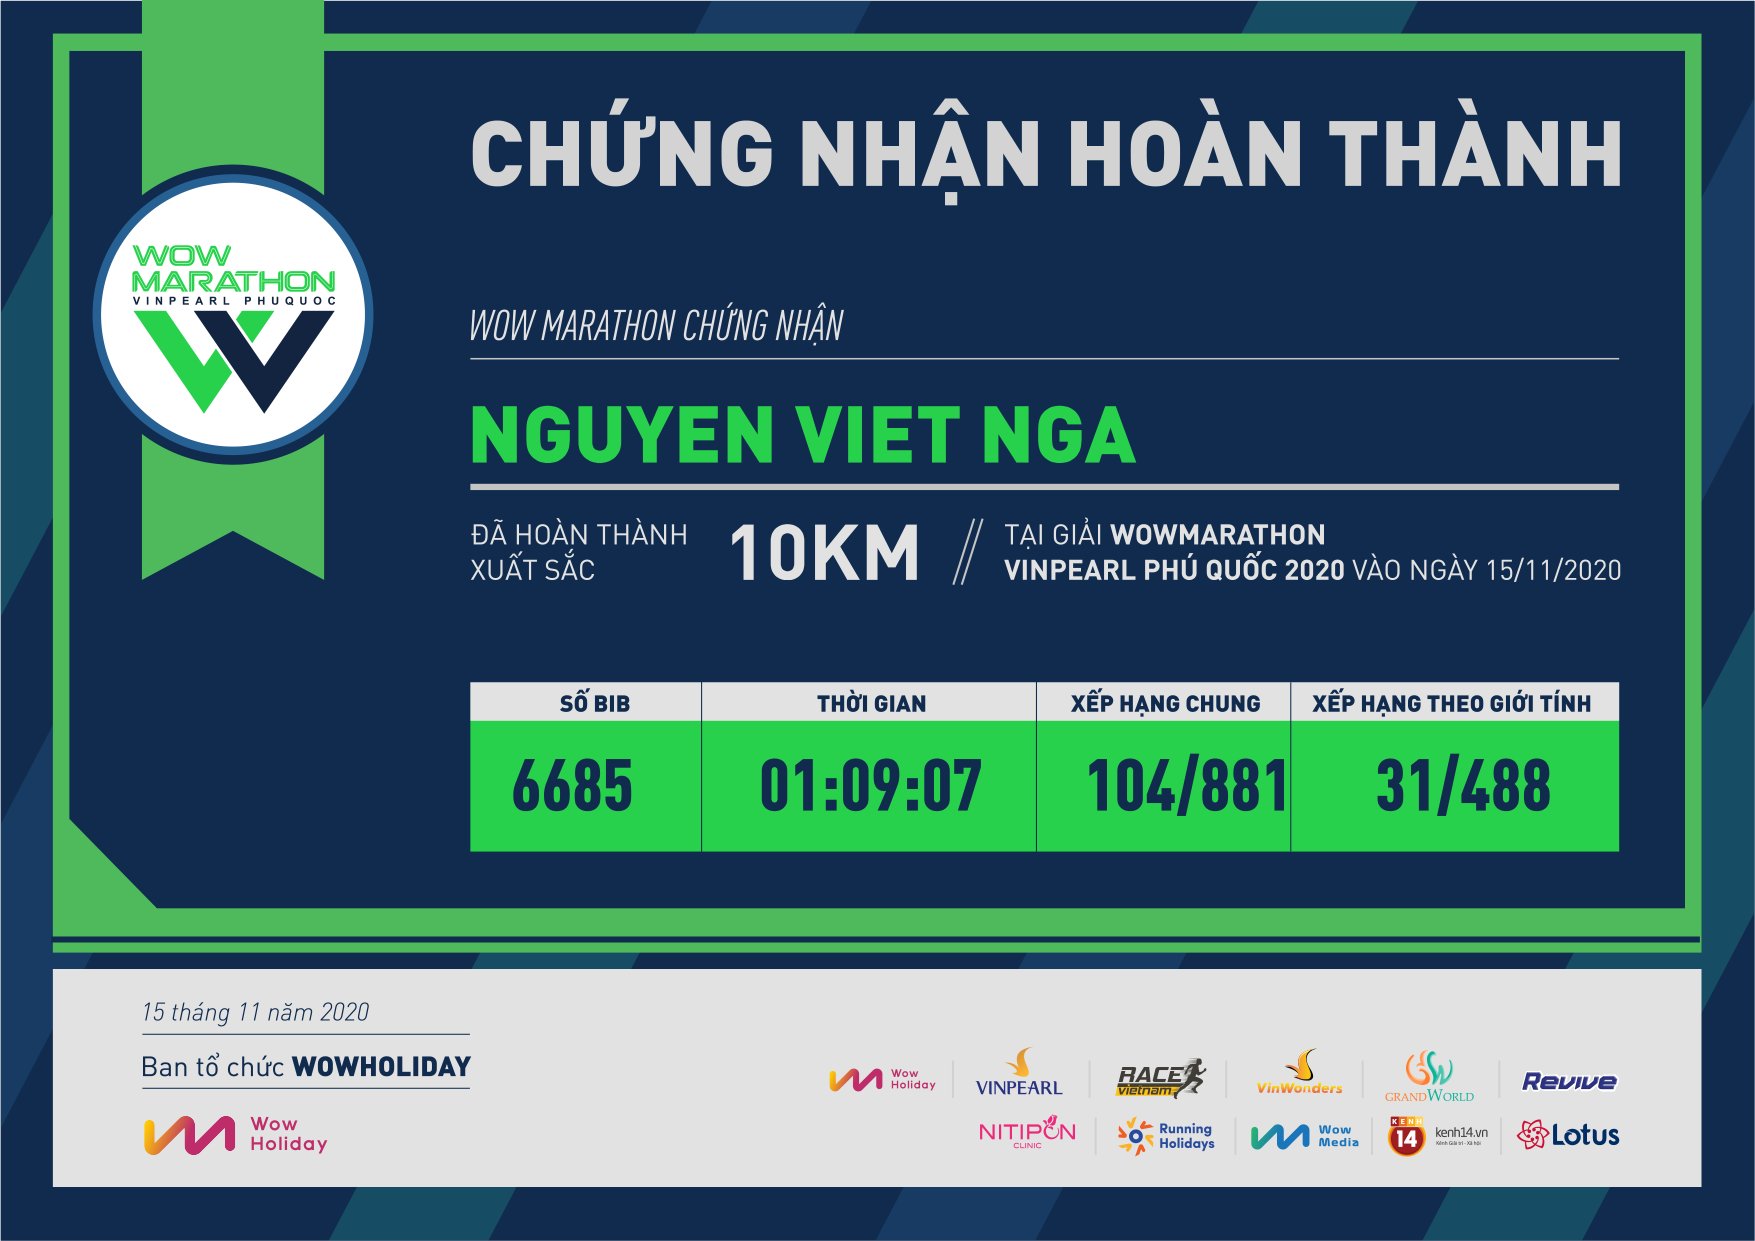 6685 - Nguyen Viet Nga